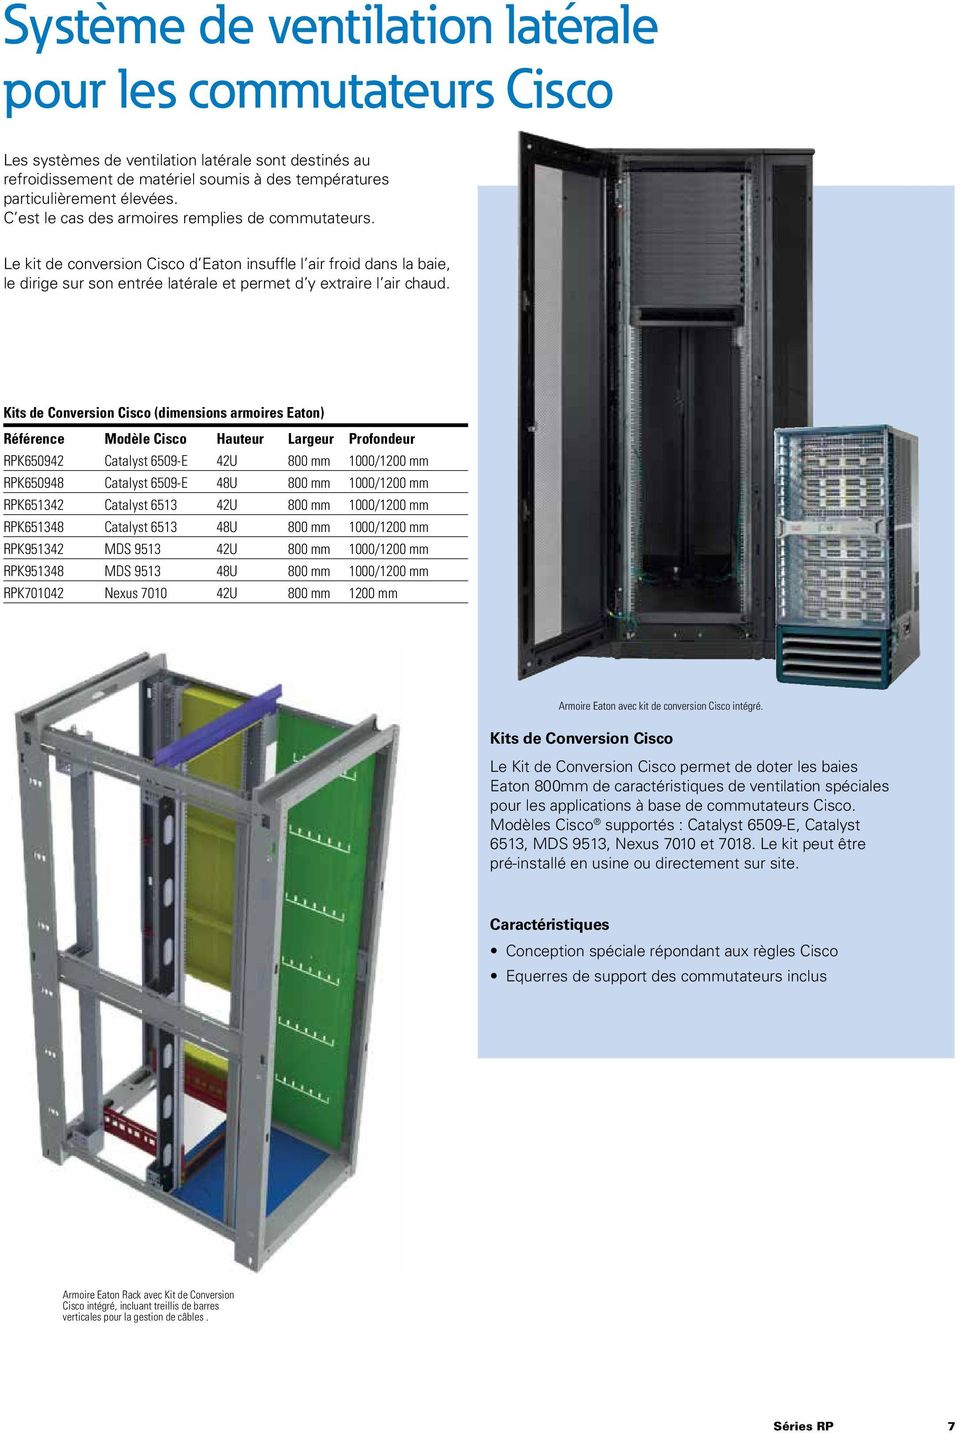 Kits de Conversion Cisco (dimensions armoires Eaton) Référence Modèle Cisco Hauteur Largeur Profondeur RPK650942 Catalyst 6509-E 42U 800 mm 1000/1200 mm RPK650948 Catalyst 6509-E 48U 800 mm 1000/1200